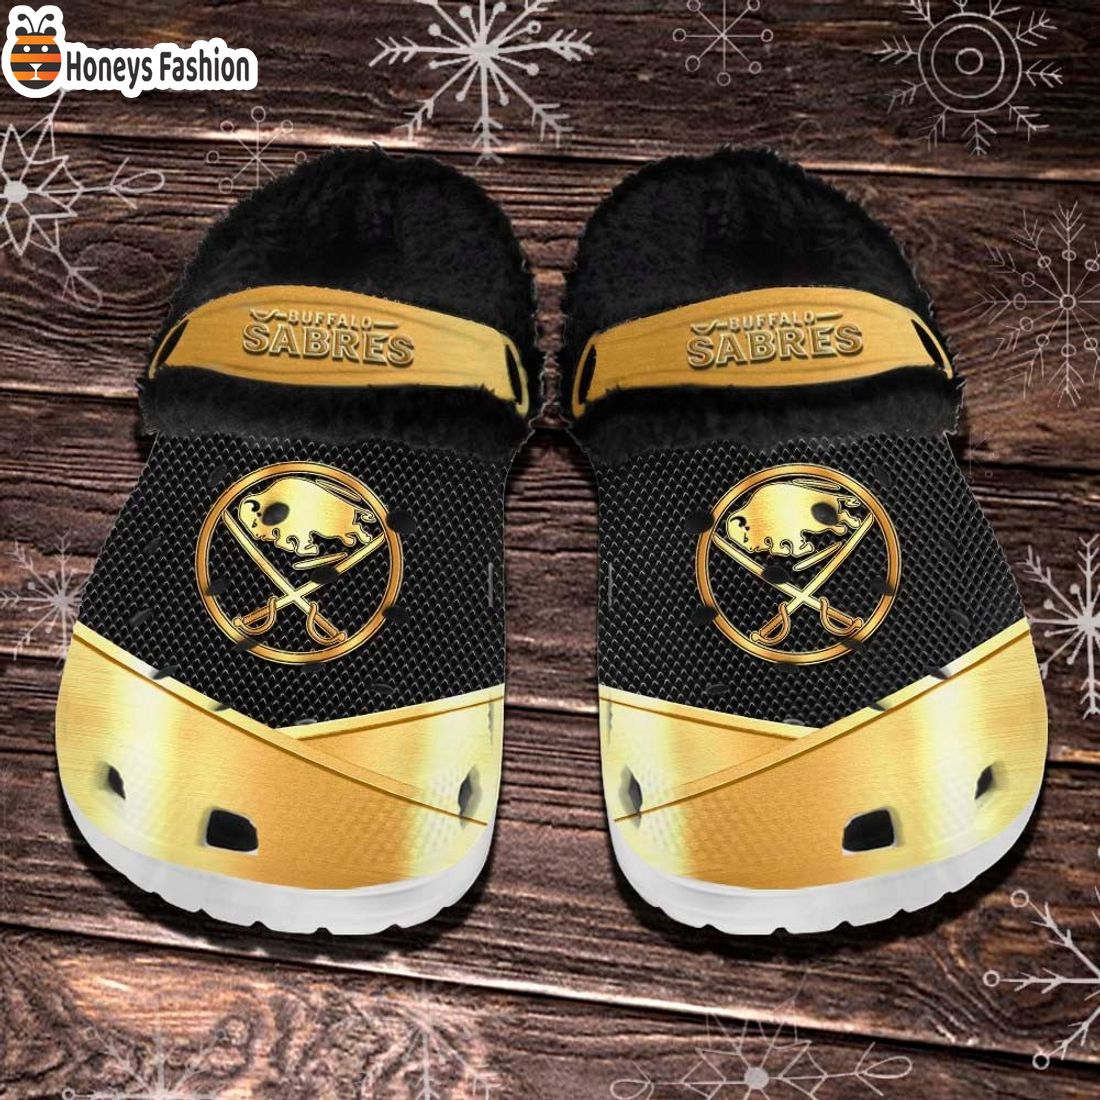 Buffalo Sabres NHL Fleece Crocs Clogs Shoes